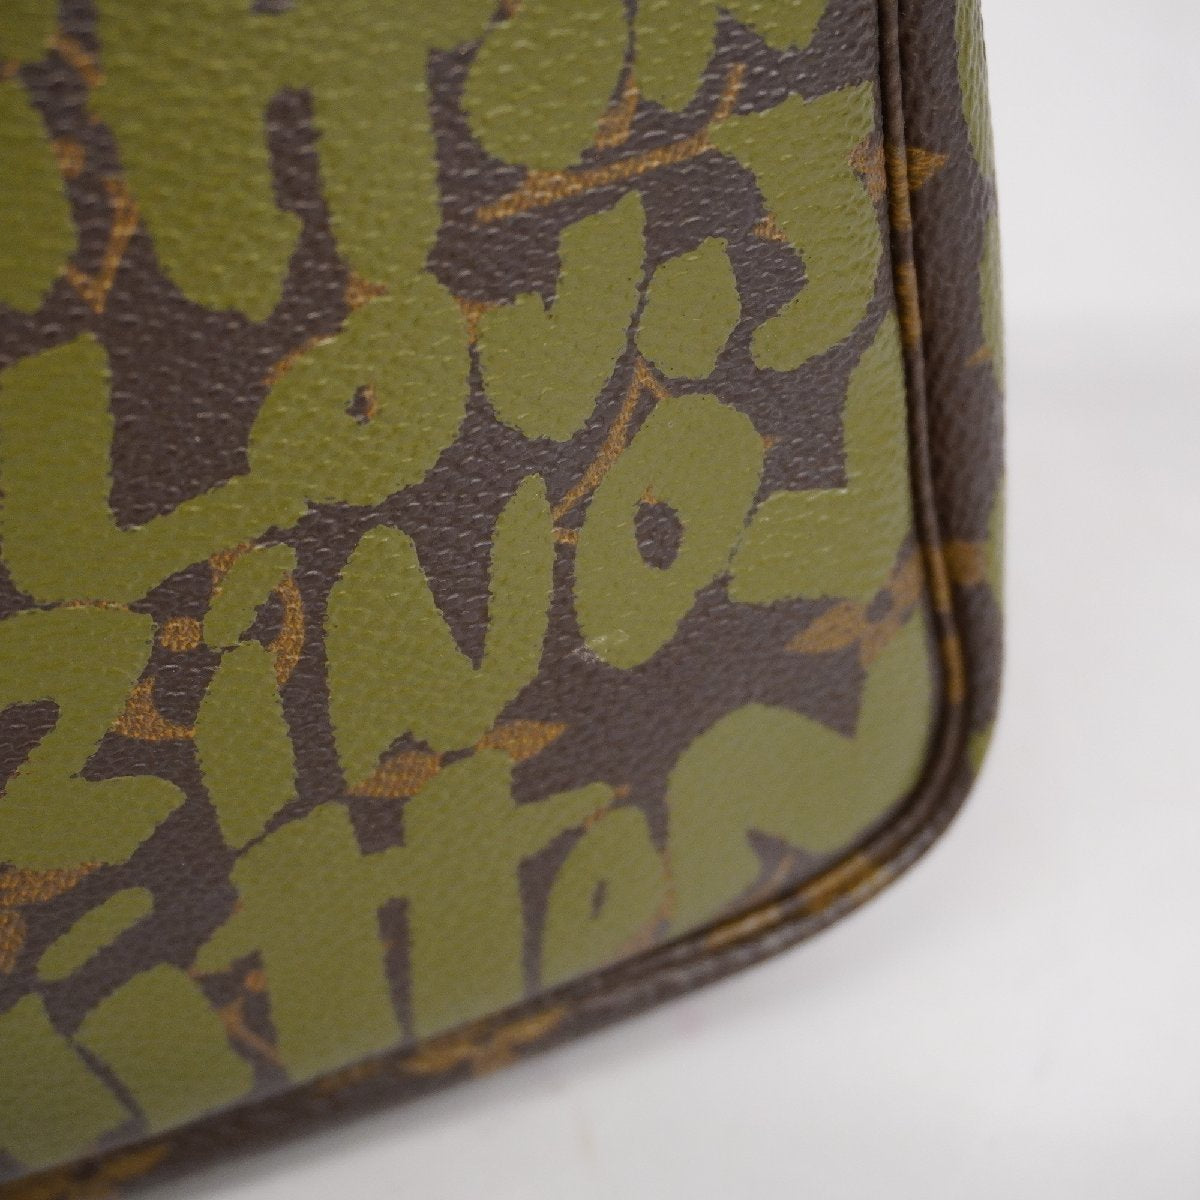 Louis Vuitton Pochette Accessoires Handbag Stephen Sprouse Graffiti M92191